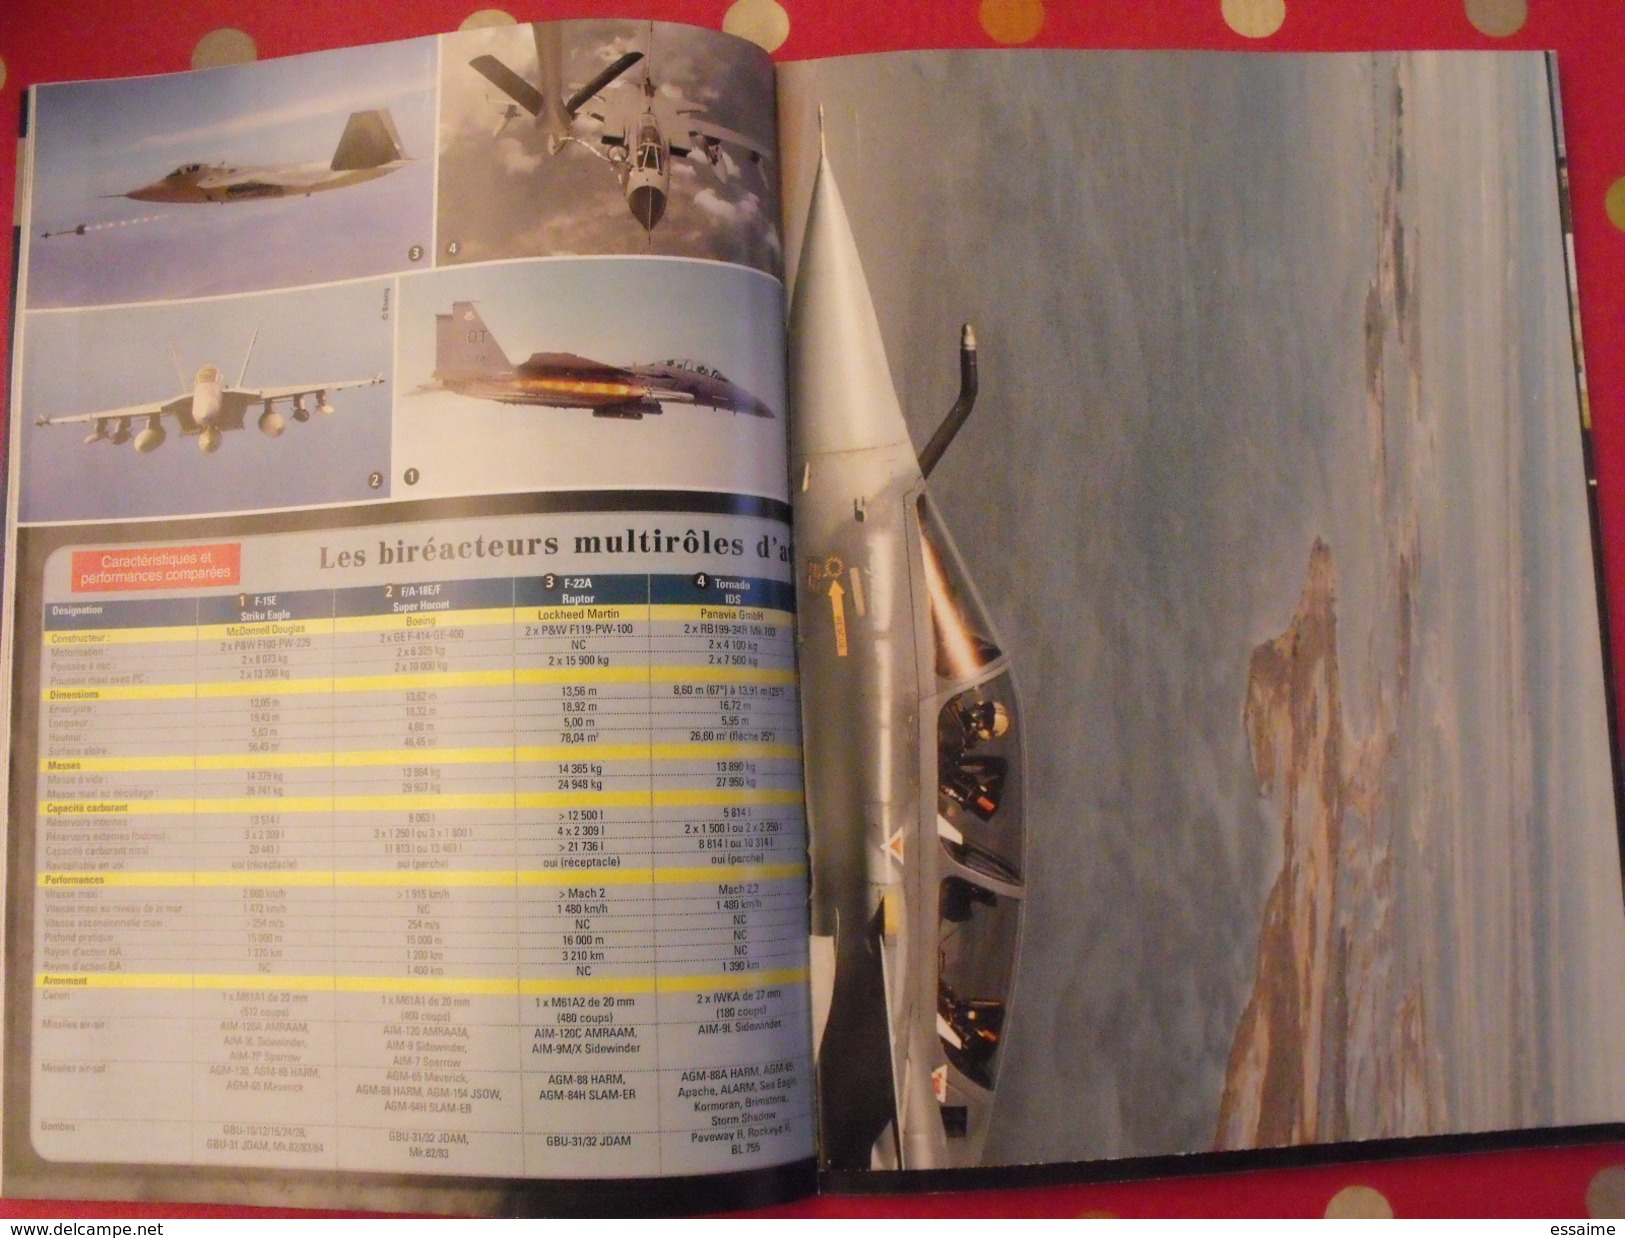 4 revues Air Fan. aéronautique militaire international. 1999, 2001.posters avions de combat  mig mirage rafale F15 Su-27